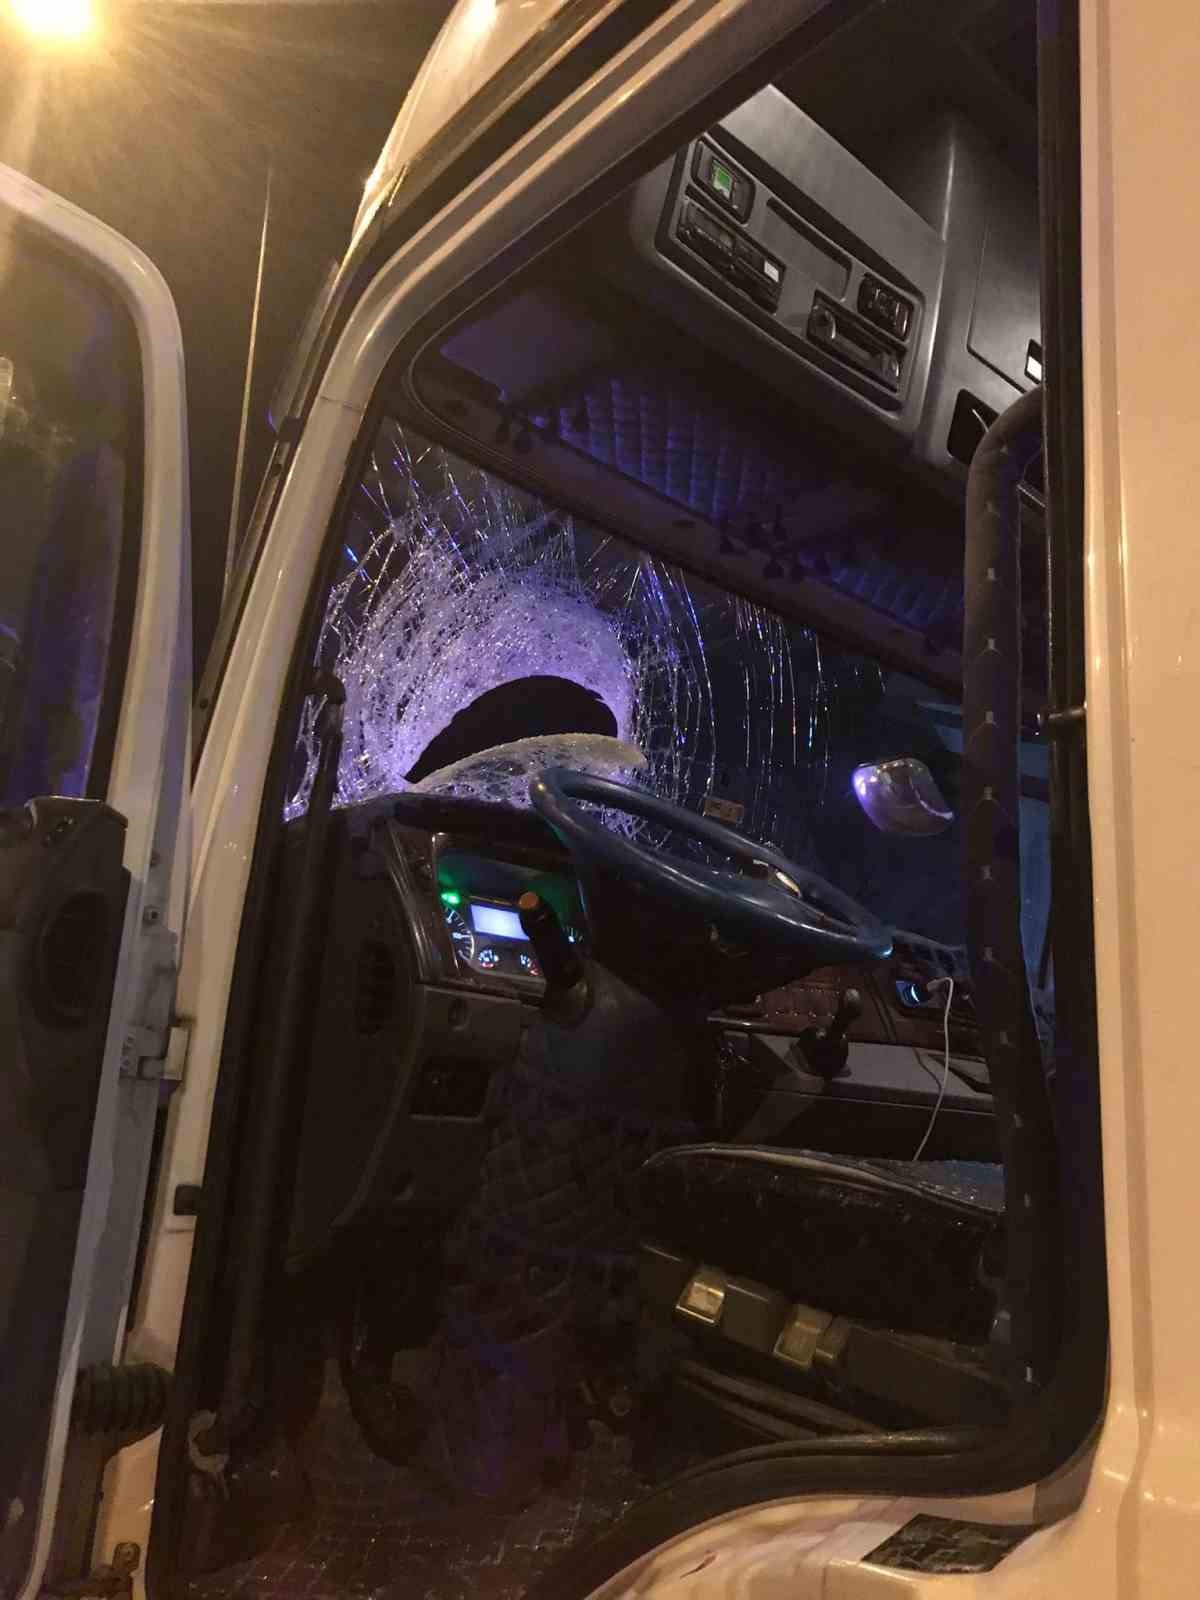 Otoyolda ilginç kaza: Fırlayan balata başka aracın camından girdi
